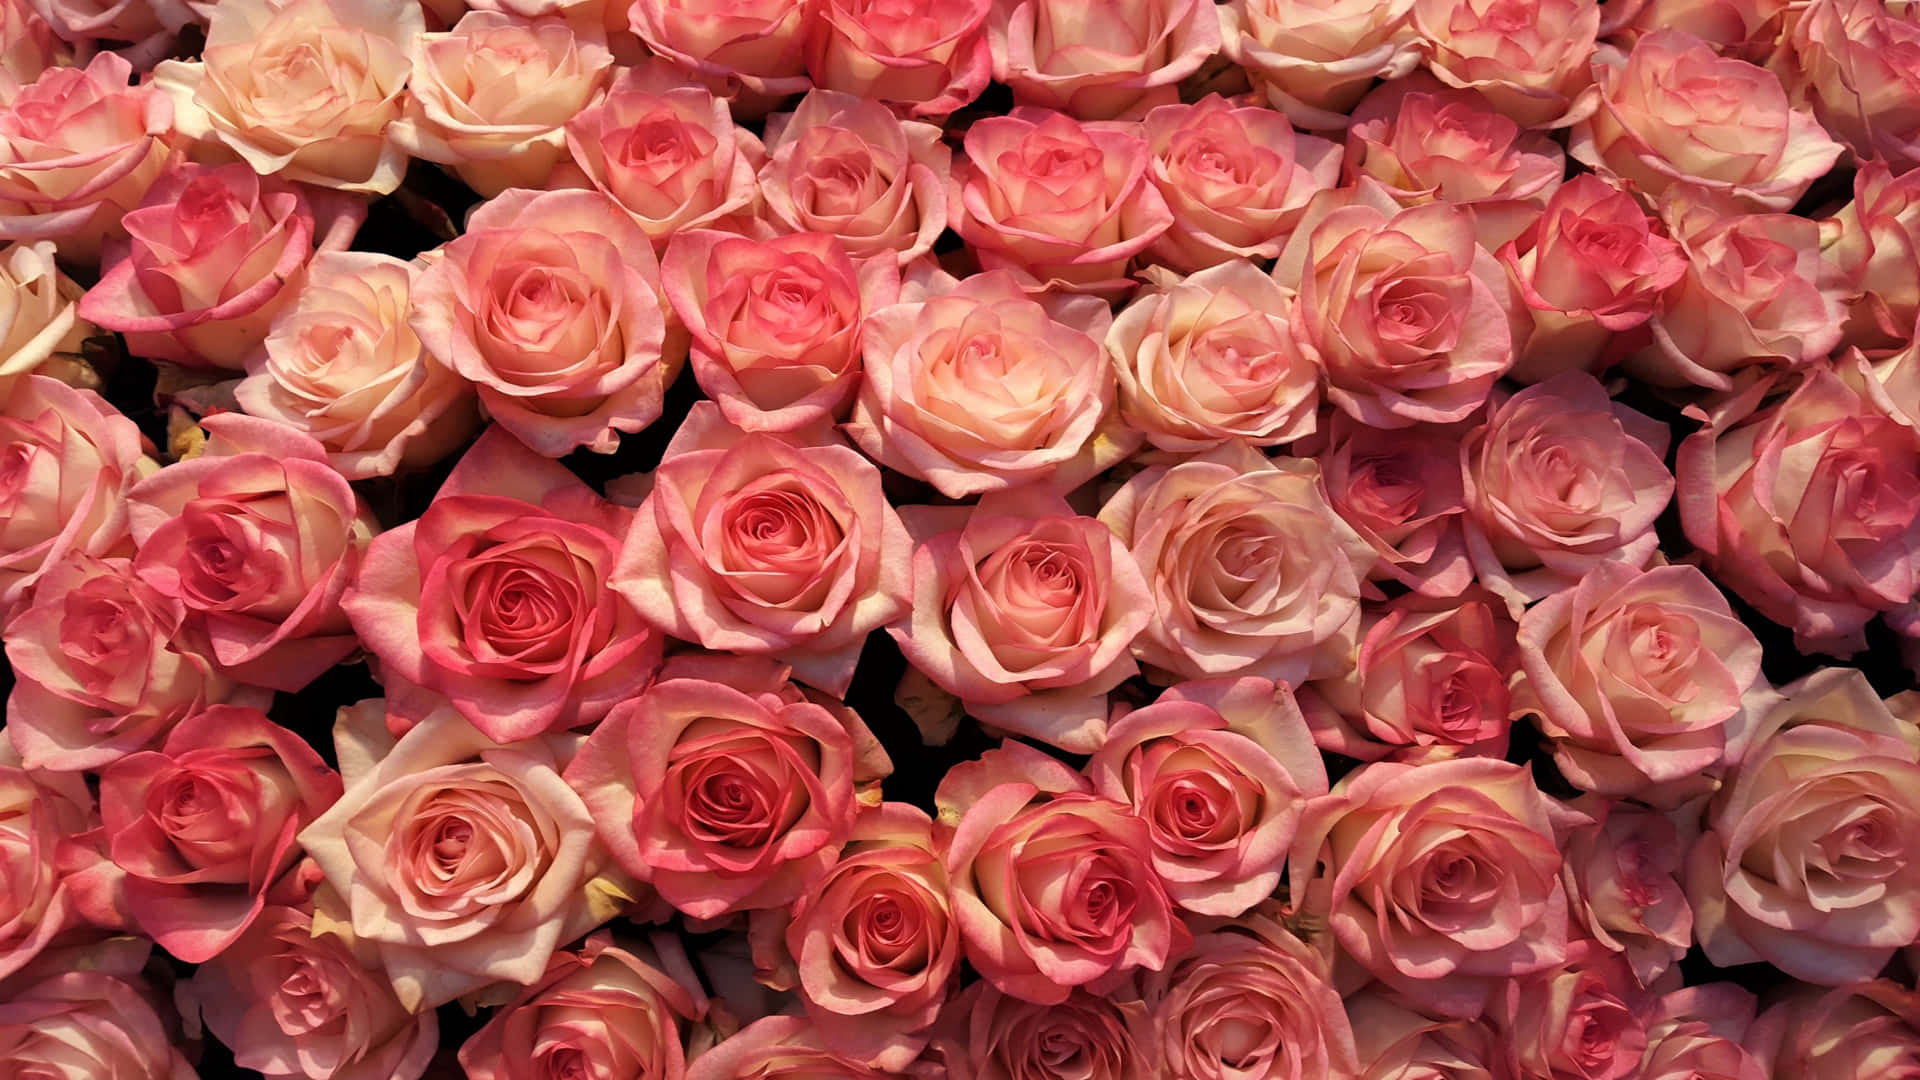 1440pbakgrund Med Rosa Nyanser Av Rosor.